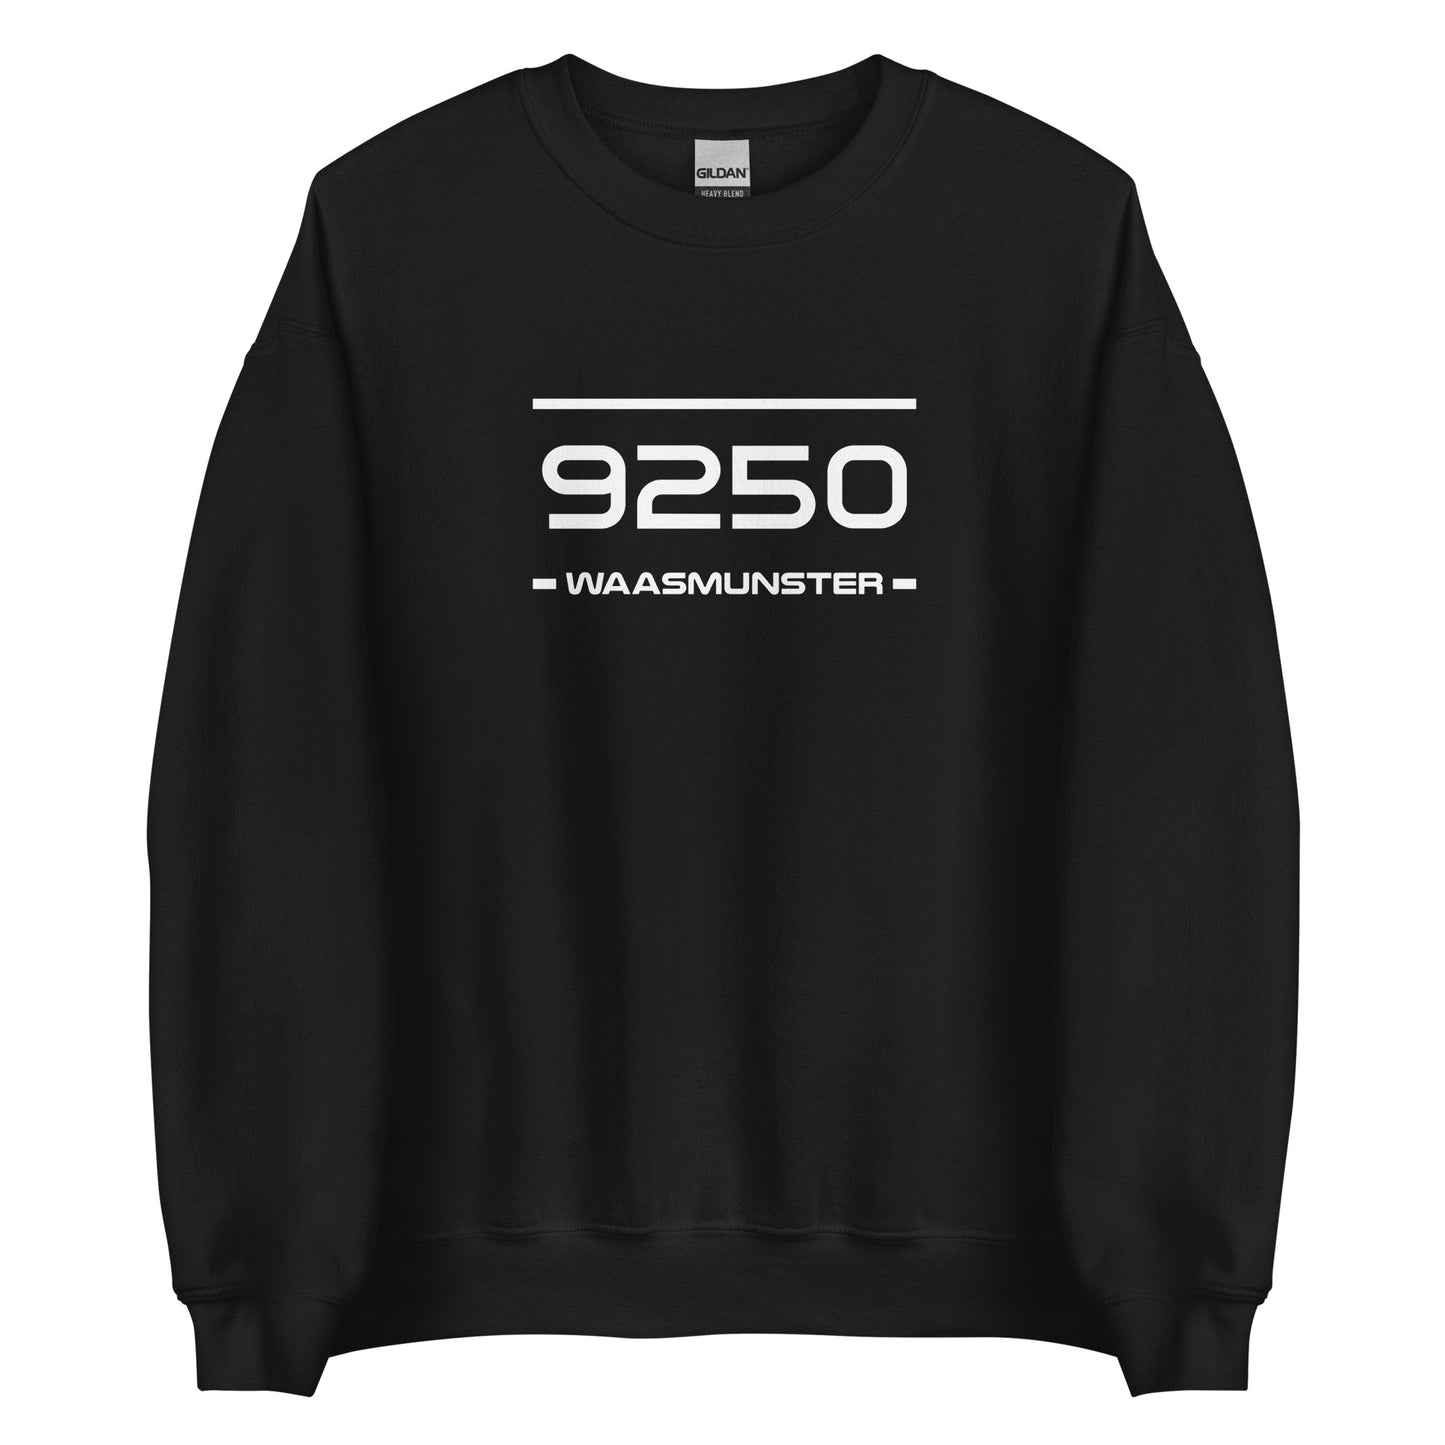 Sweater - 9250 - Waasmunster (M/V)